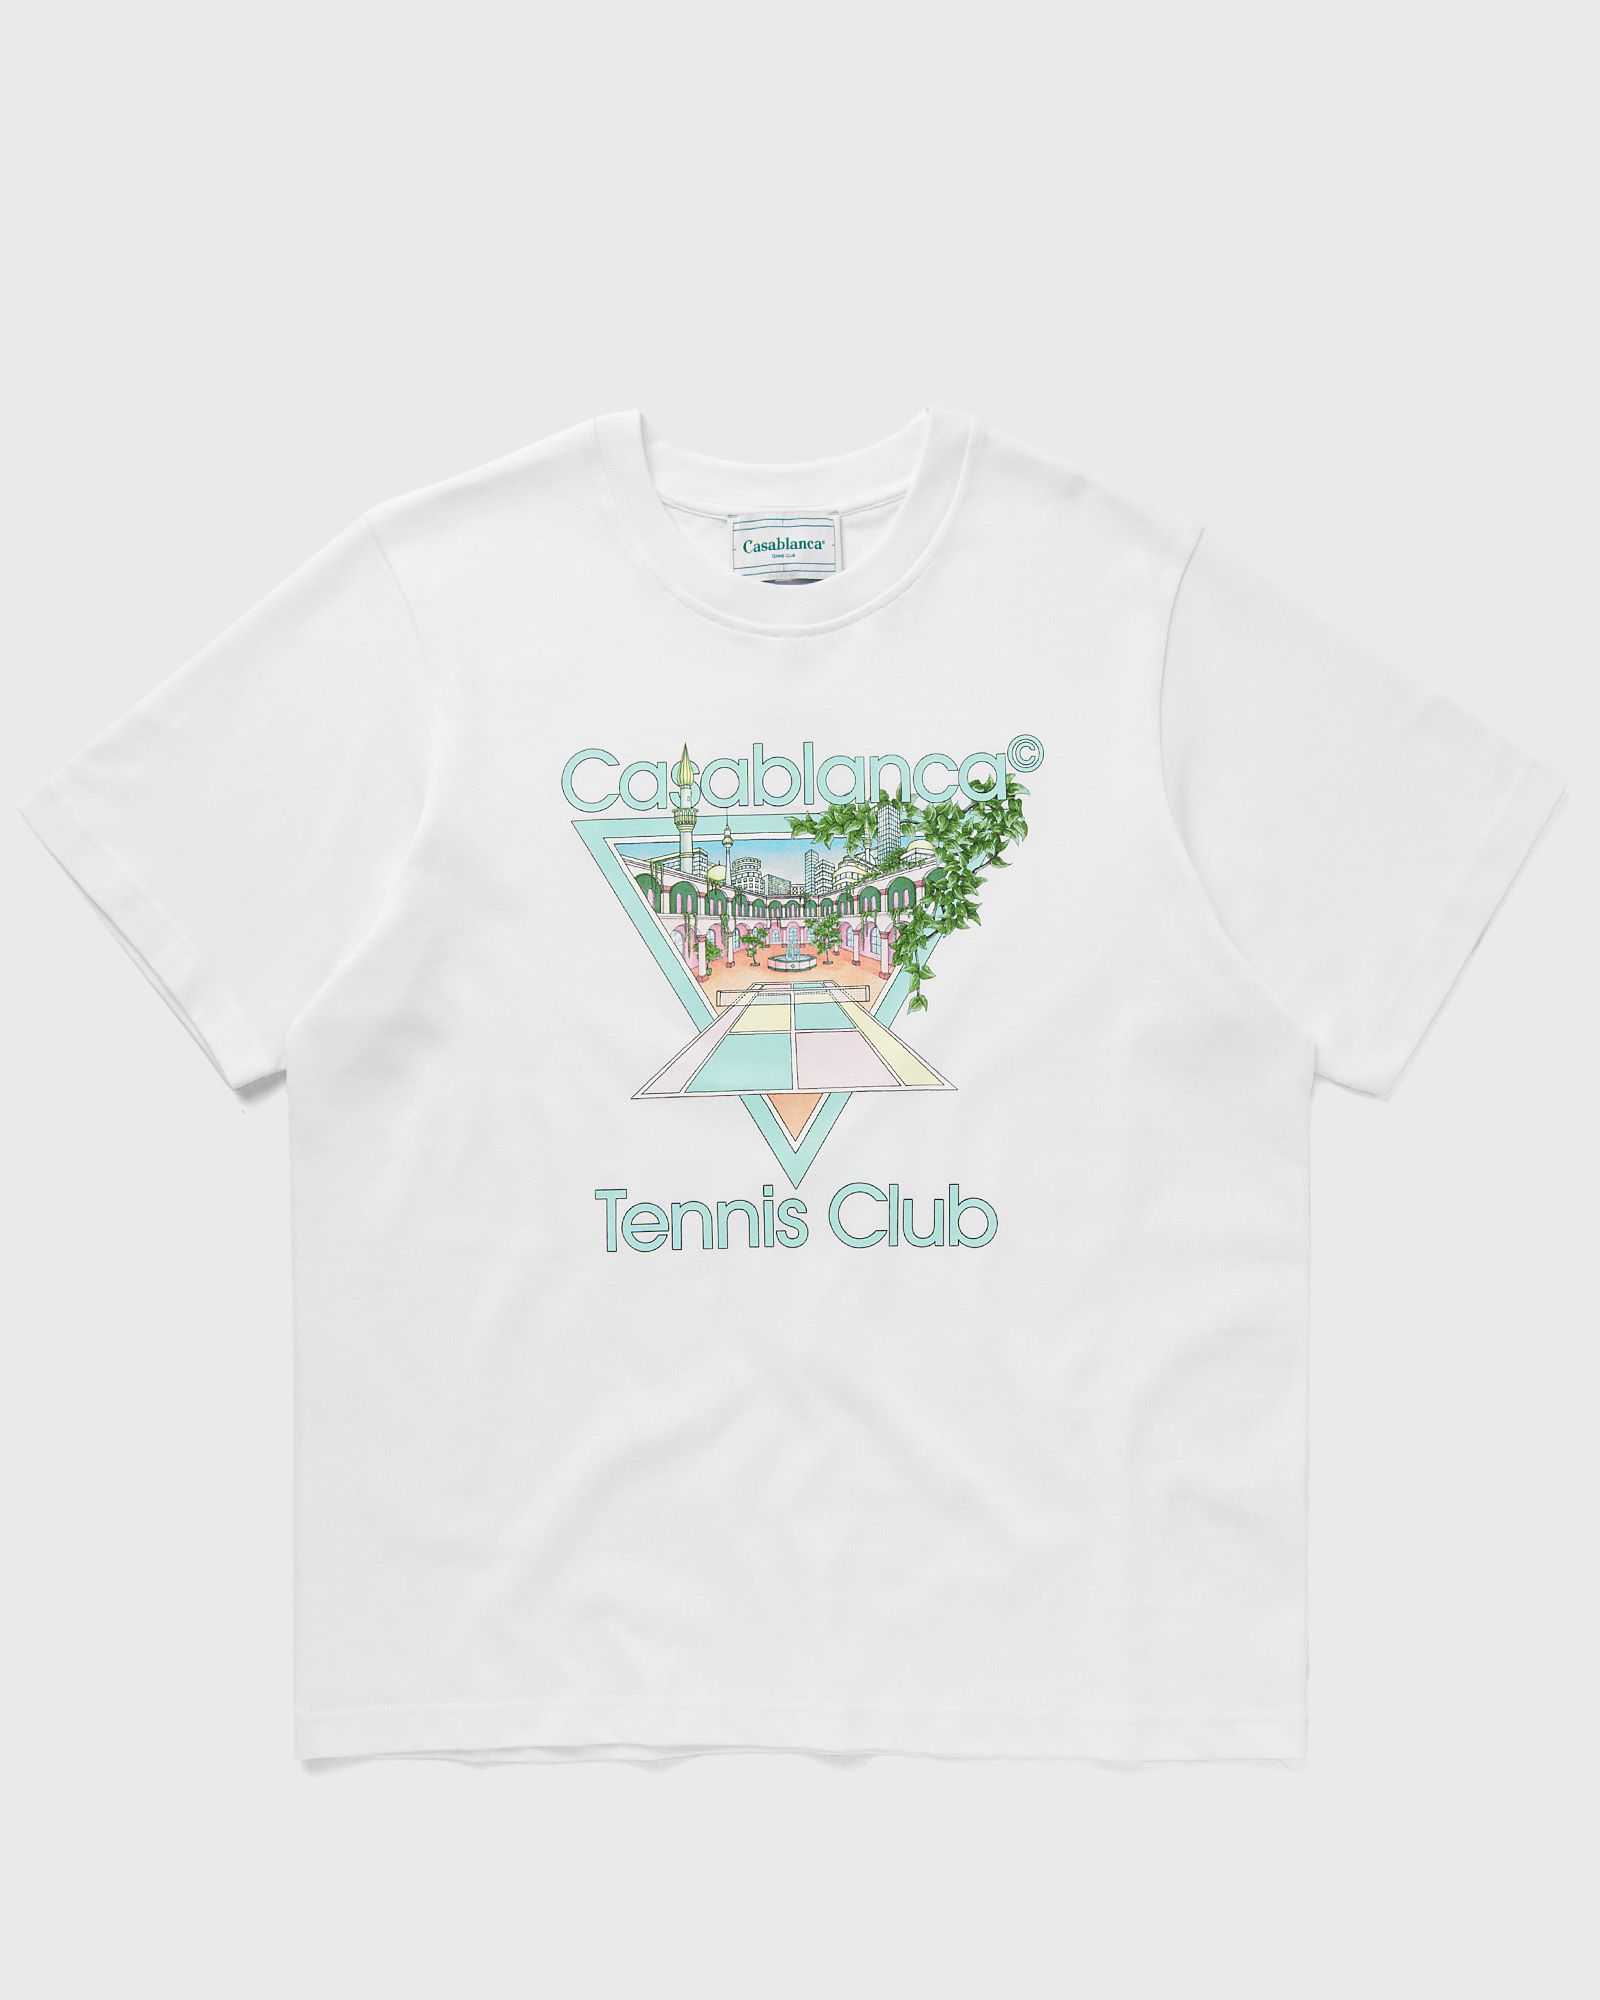 Casablanca - tennis club pastelle printed t-shirt men shortsleeves white in größe:xl